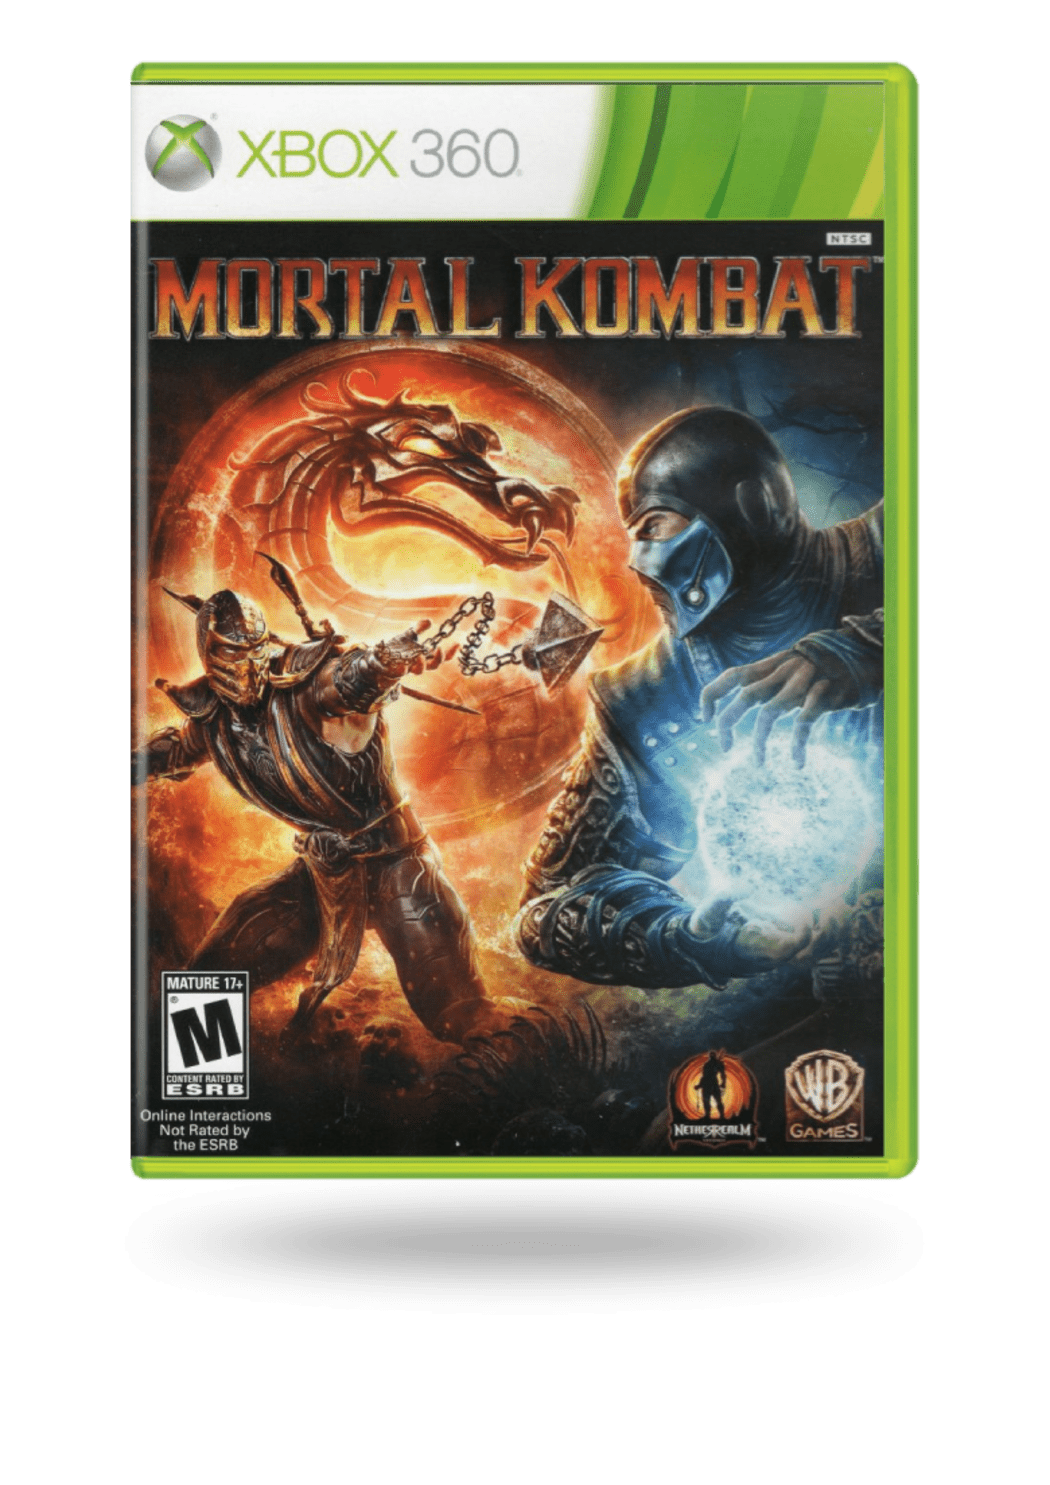 Juegos Baratos De Ps3: Mortal Kombat 9